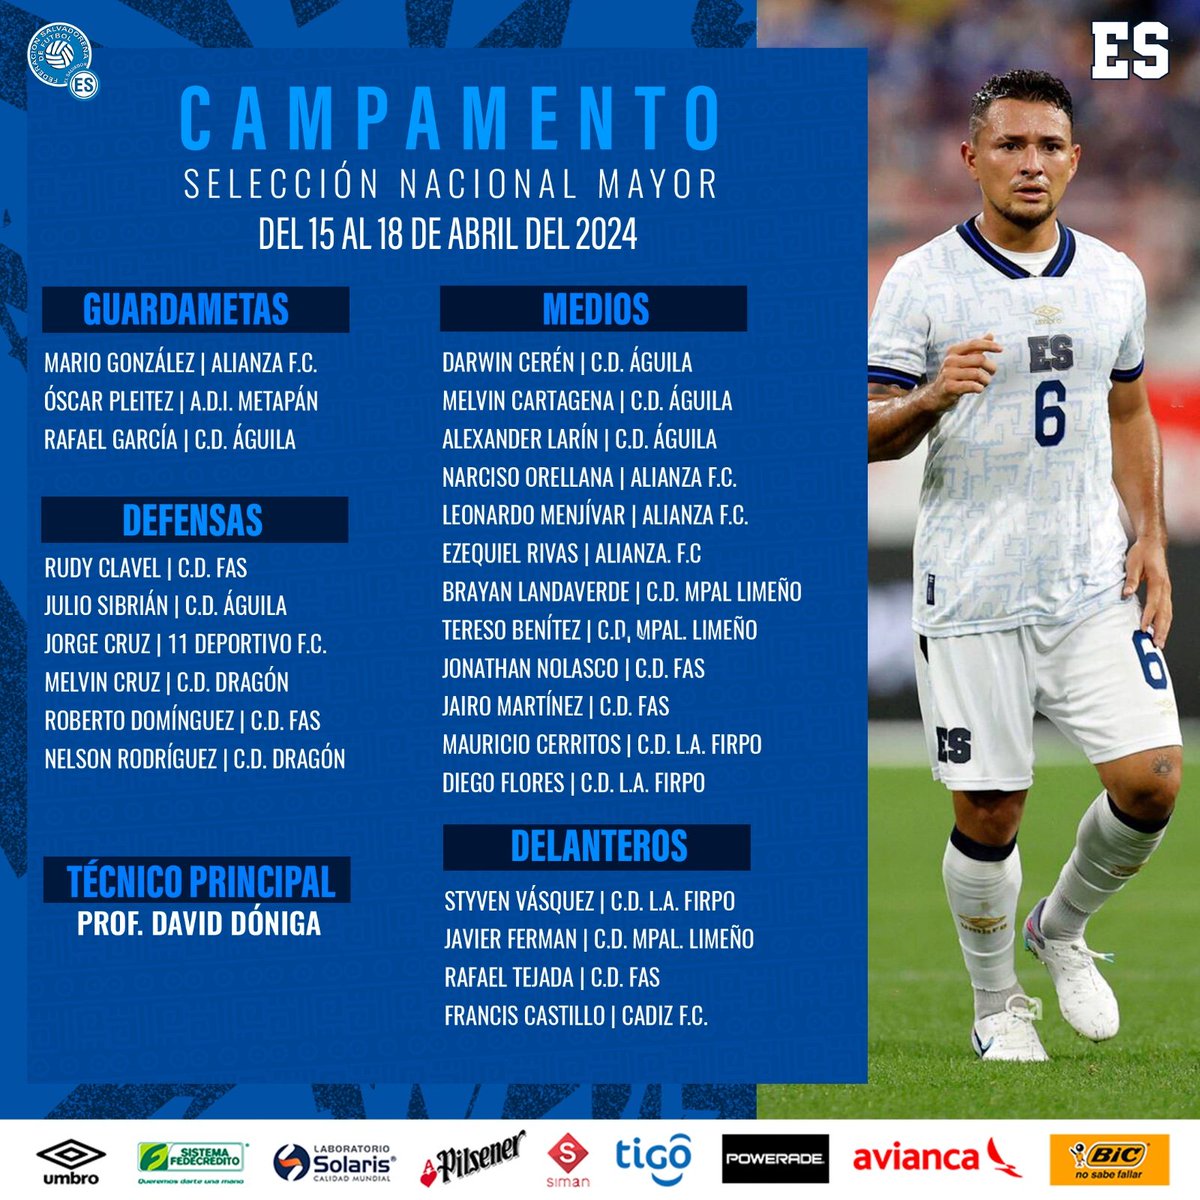 📝🇸🇻 | Selección Nacional Mayor. Jugadores convocados para campamento del 15 del 18 de Abril 2024. #ElSalvador #LaSelecta